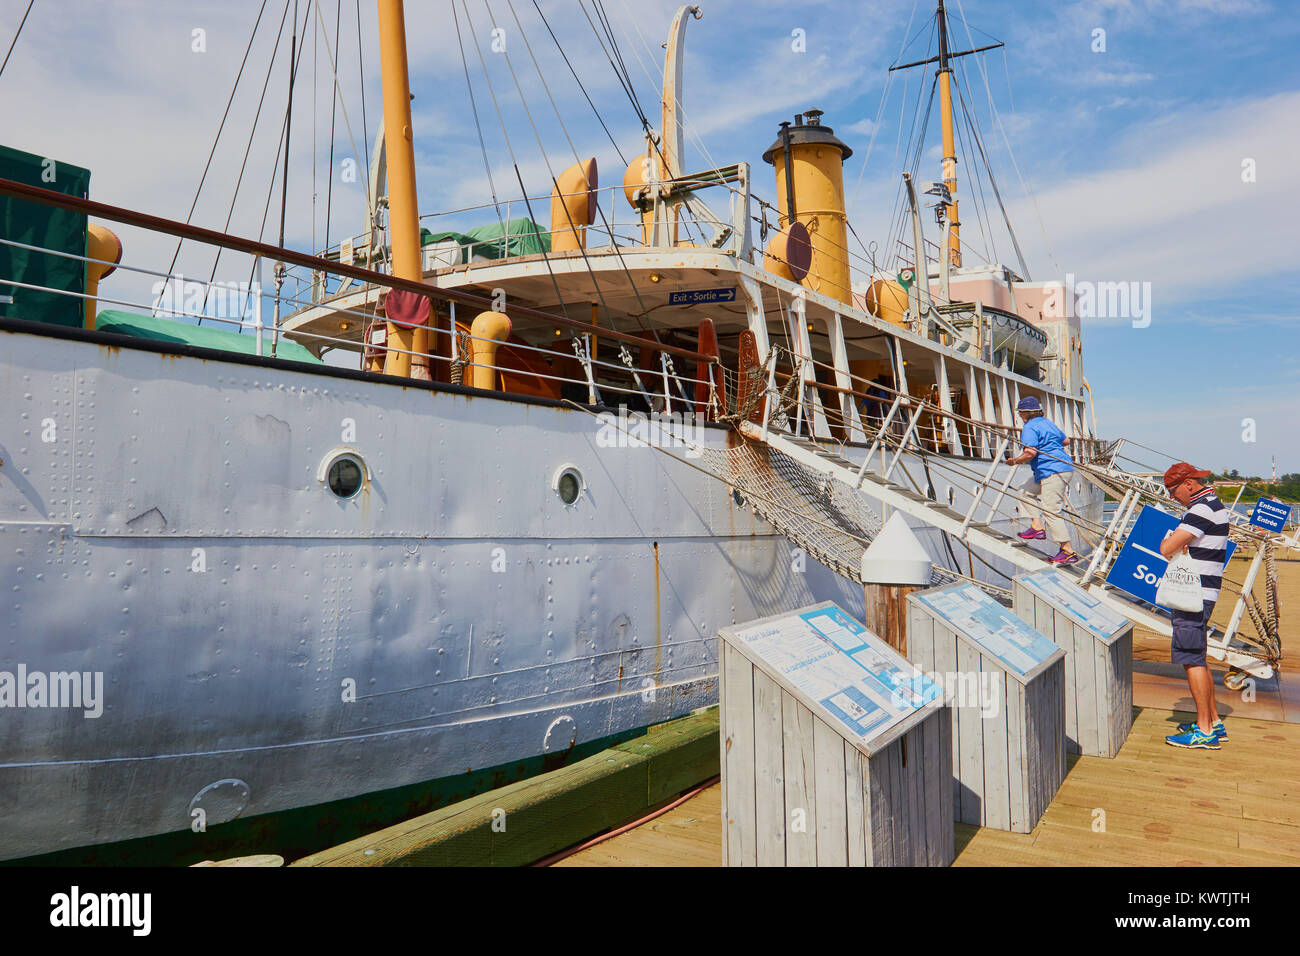 Acadia CSS maintenant le Musée Maritime de l'Atlantique et un lieu historique national du Canada, le port de Halifax, Halifax, Nouvelle-Écosse, Canada. F Banque D'Images